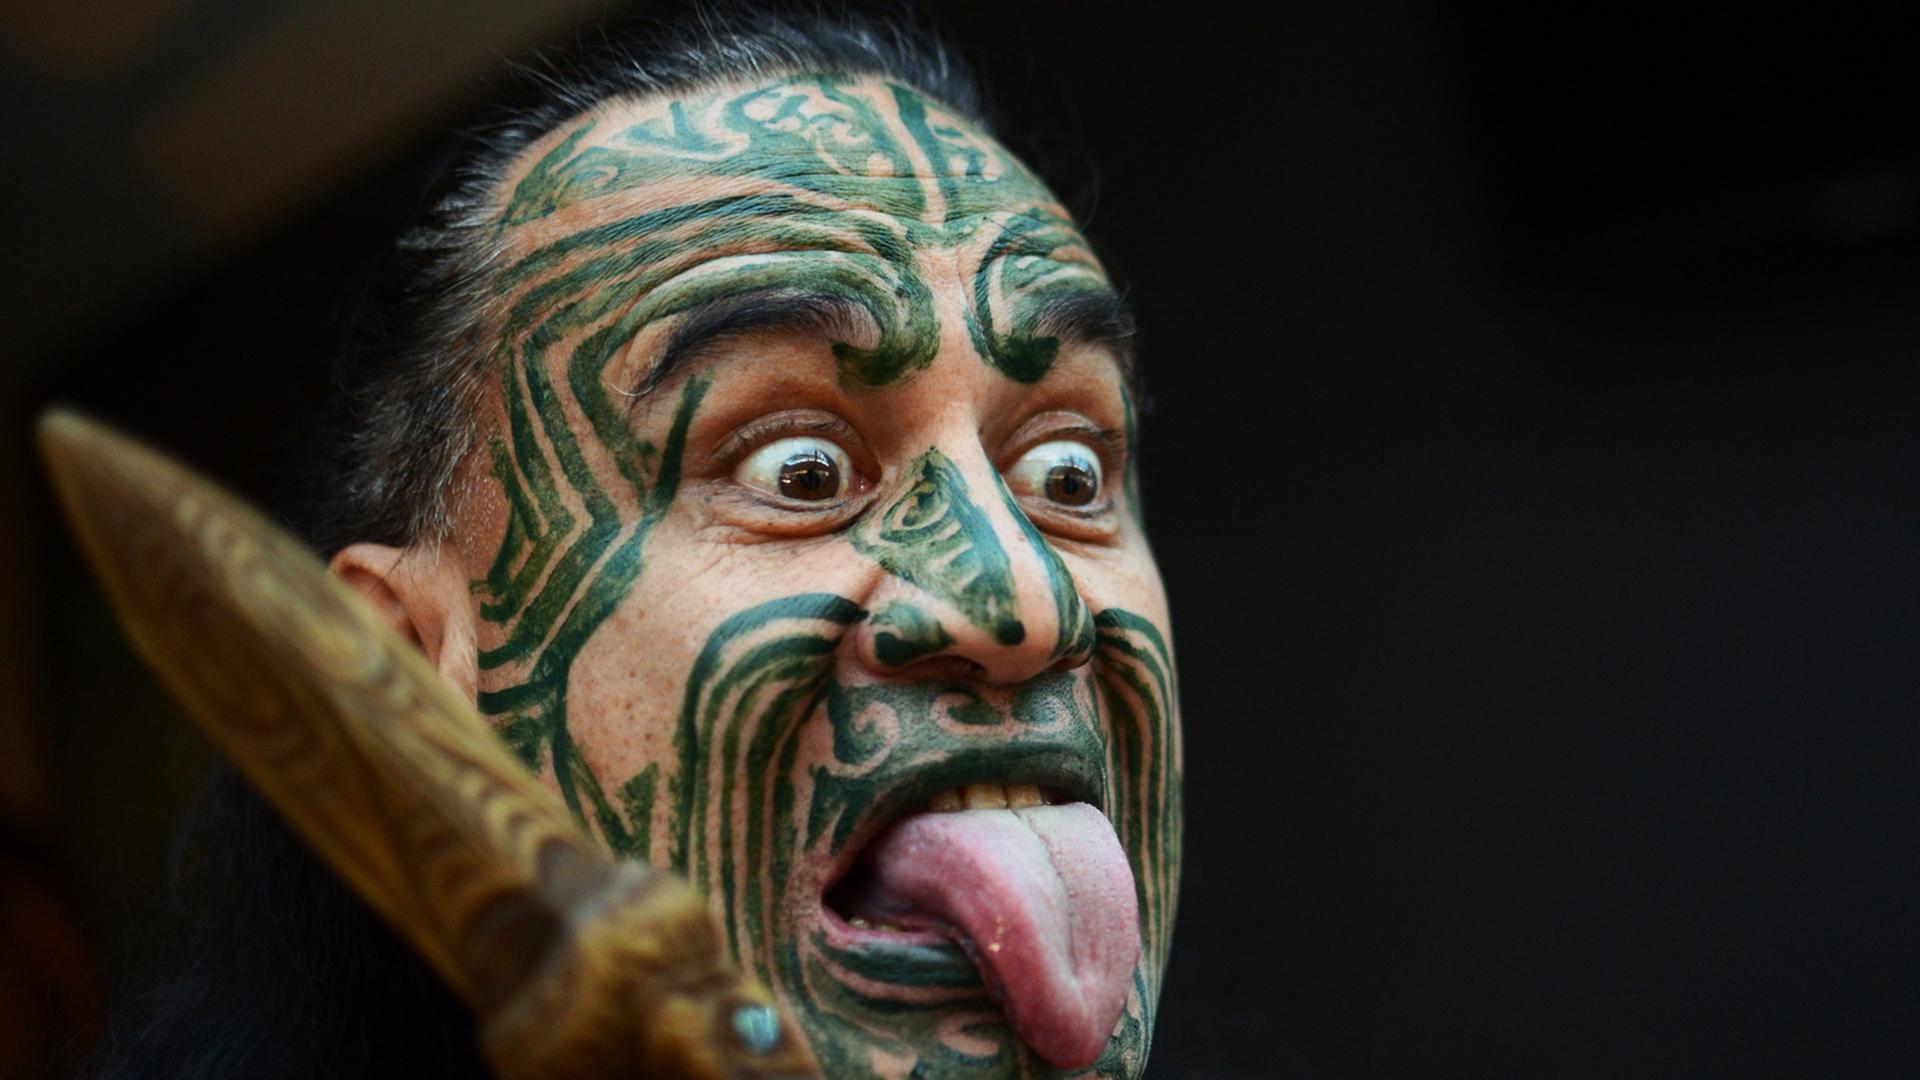 Ein Maori mit einer typischen Gesichtsbemalung und Grimasse.